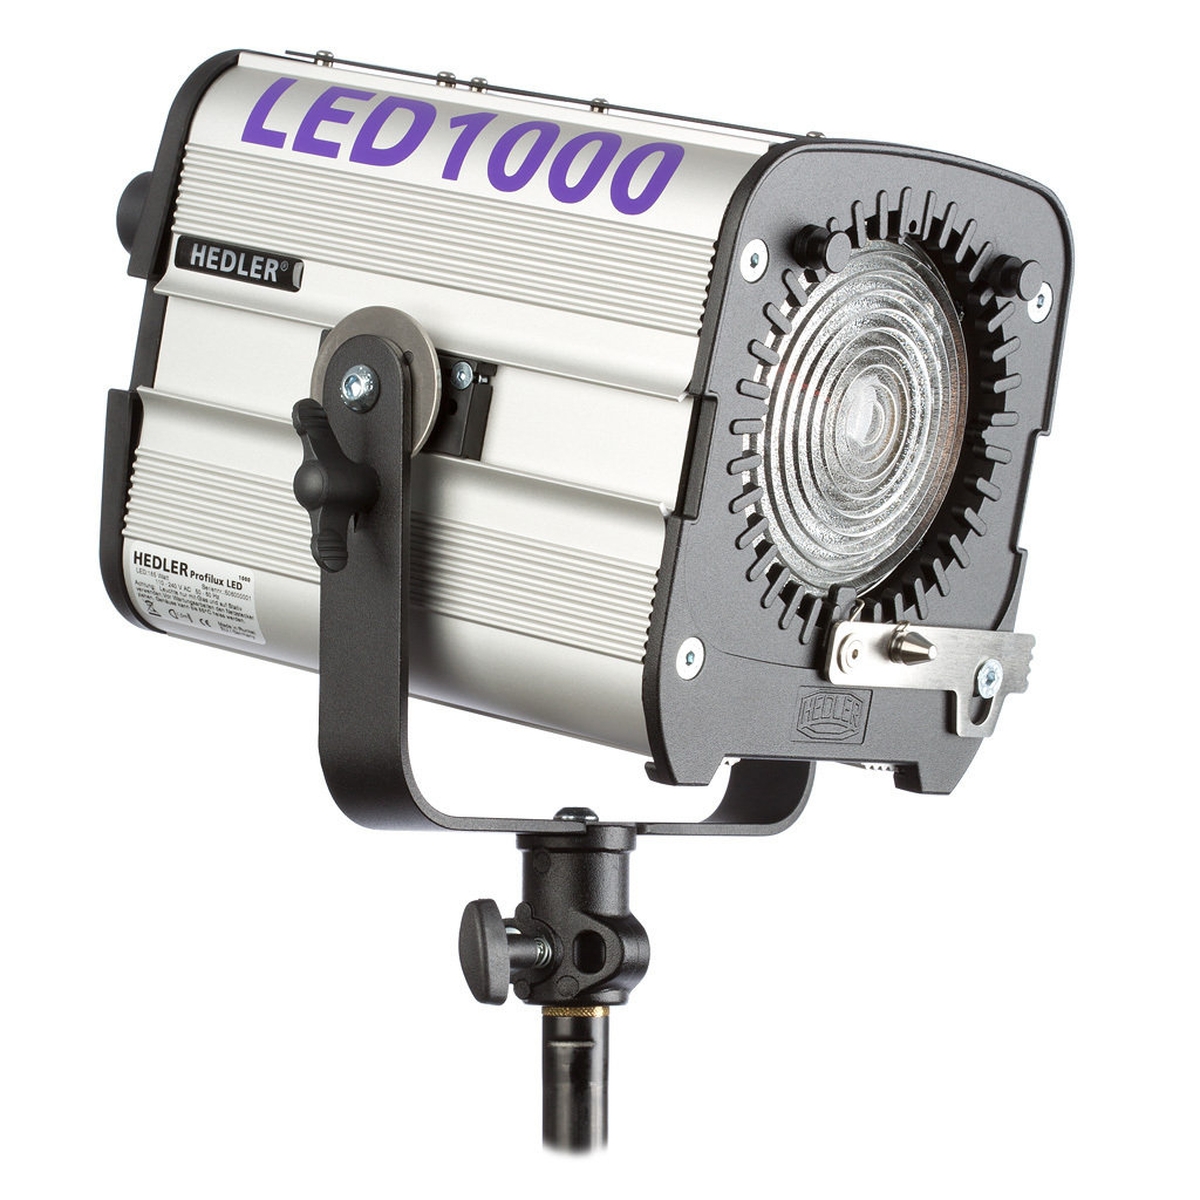 Hedler Profilux LED1000 TwinKit